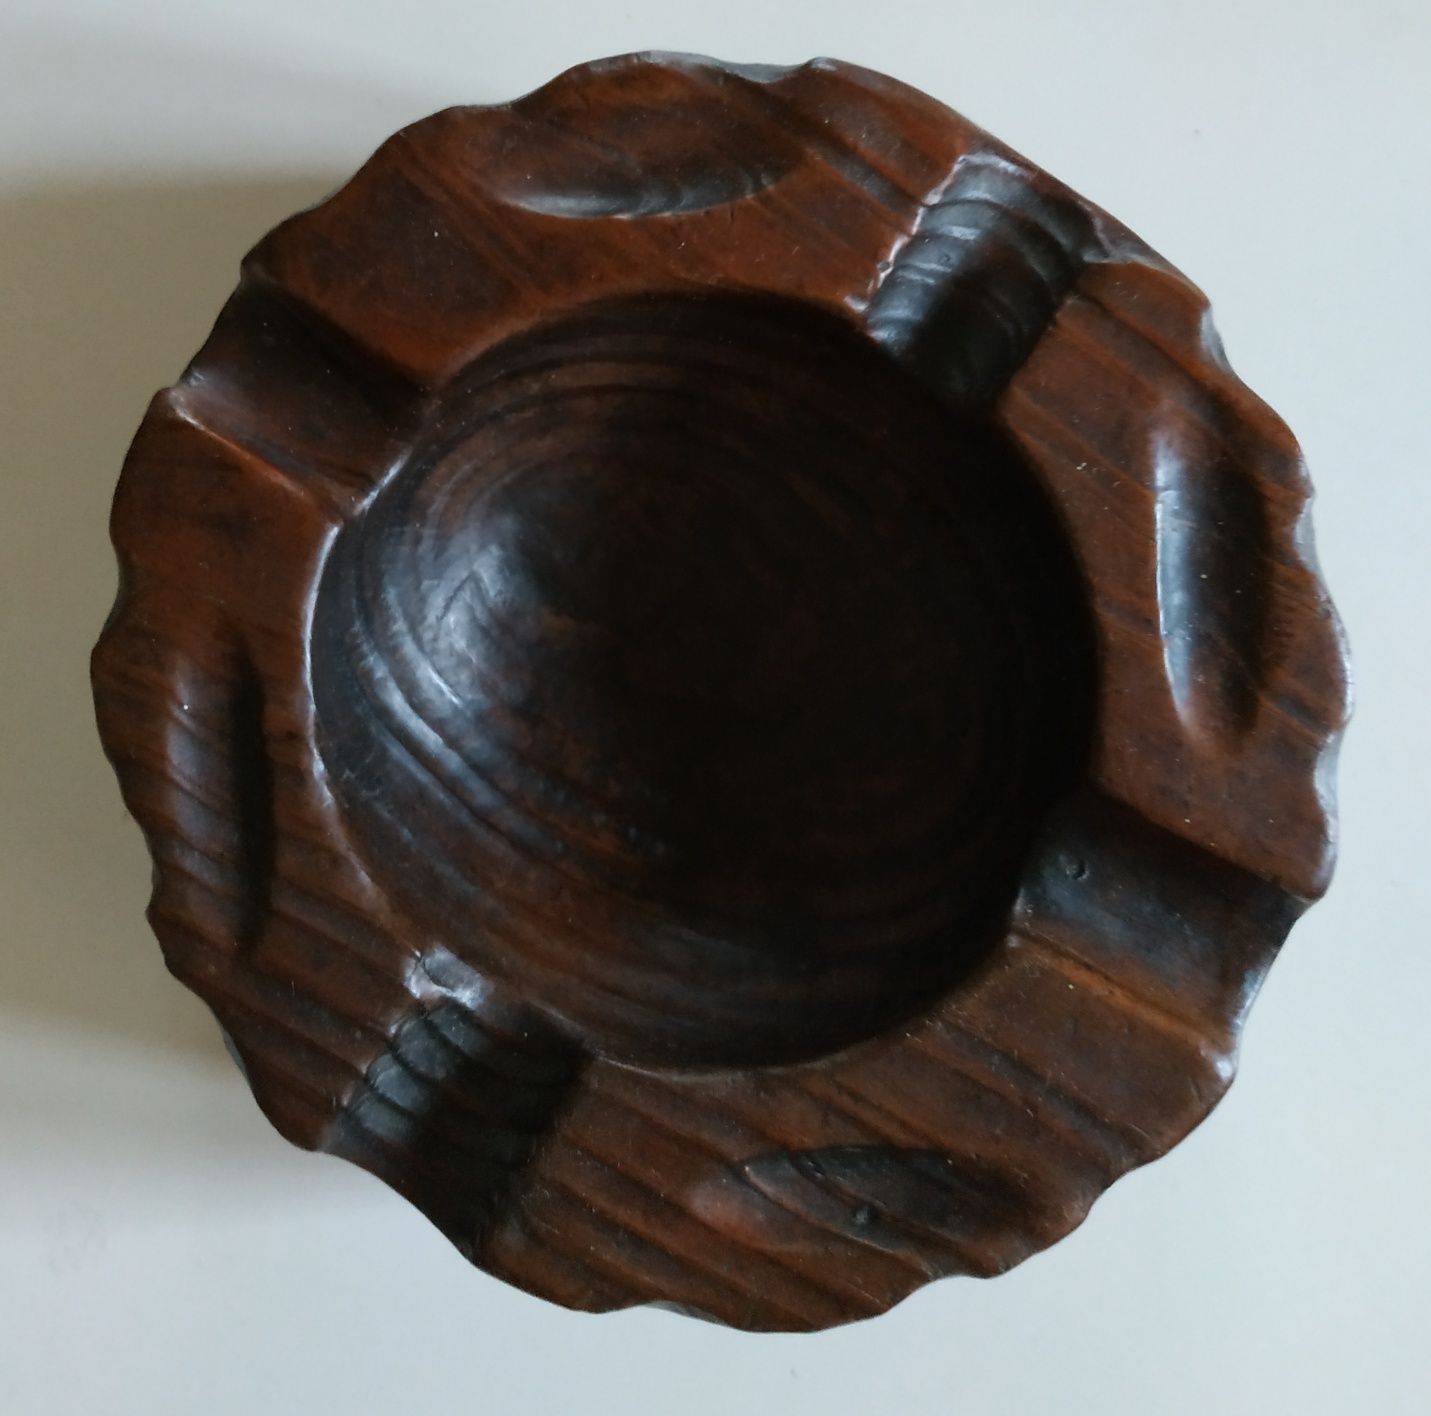 Popielniczka drewniana o średnicy 14 cm.